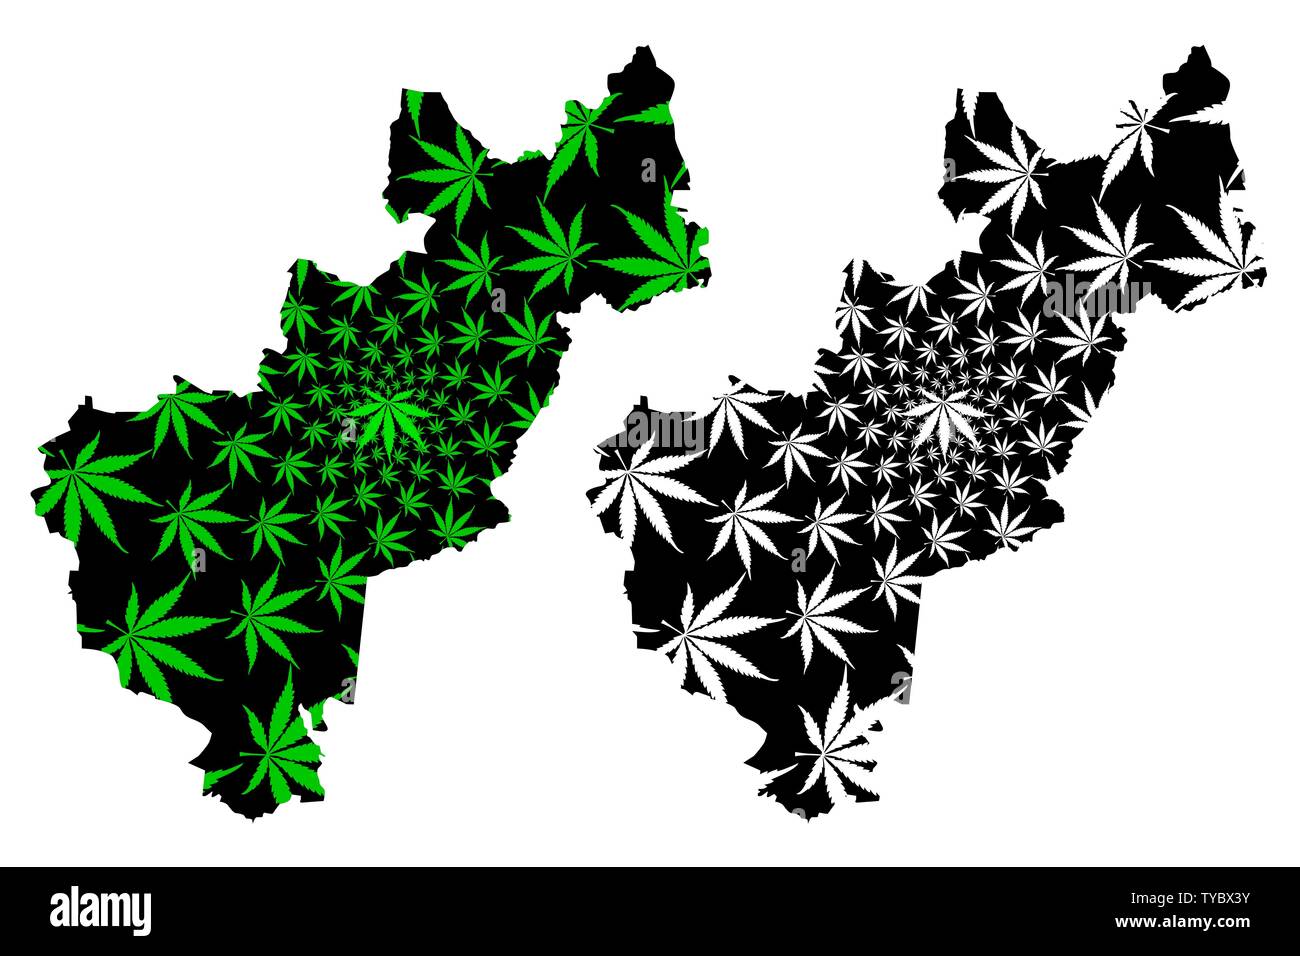 États-unis du Mexique (Queretaro, Mexique) la carte est conçue de feuilles de cannabis vert et noir, État libre et souverain de Querétaro (Querétaro de Arteaga) Illustration de Vecteur